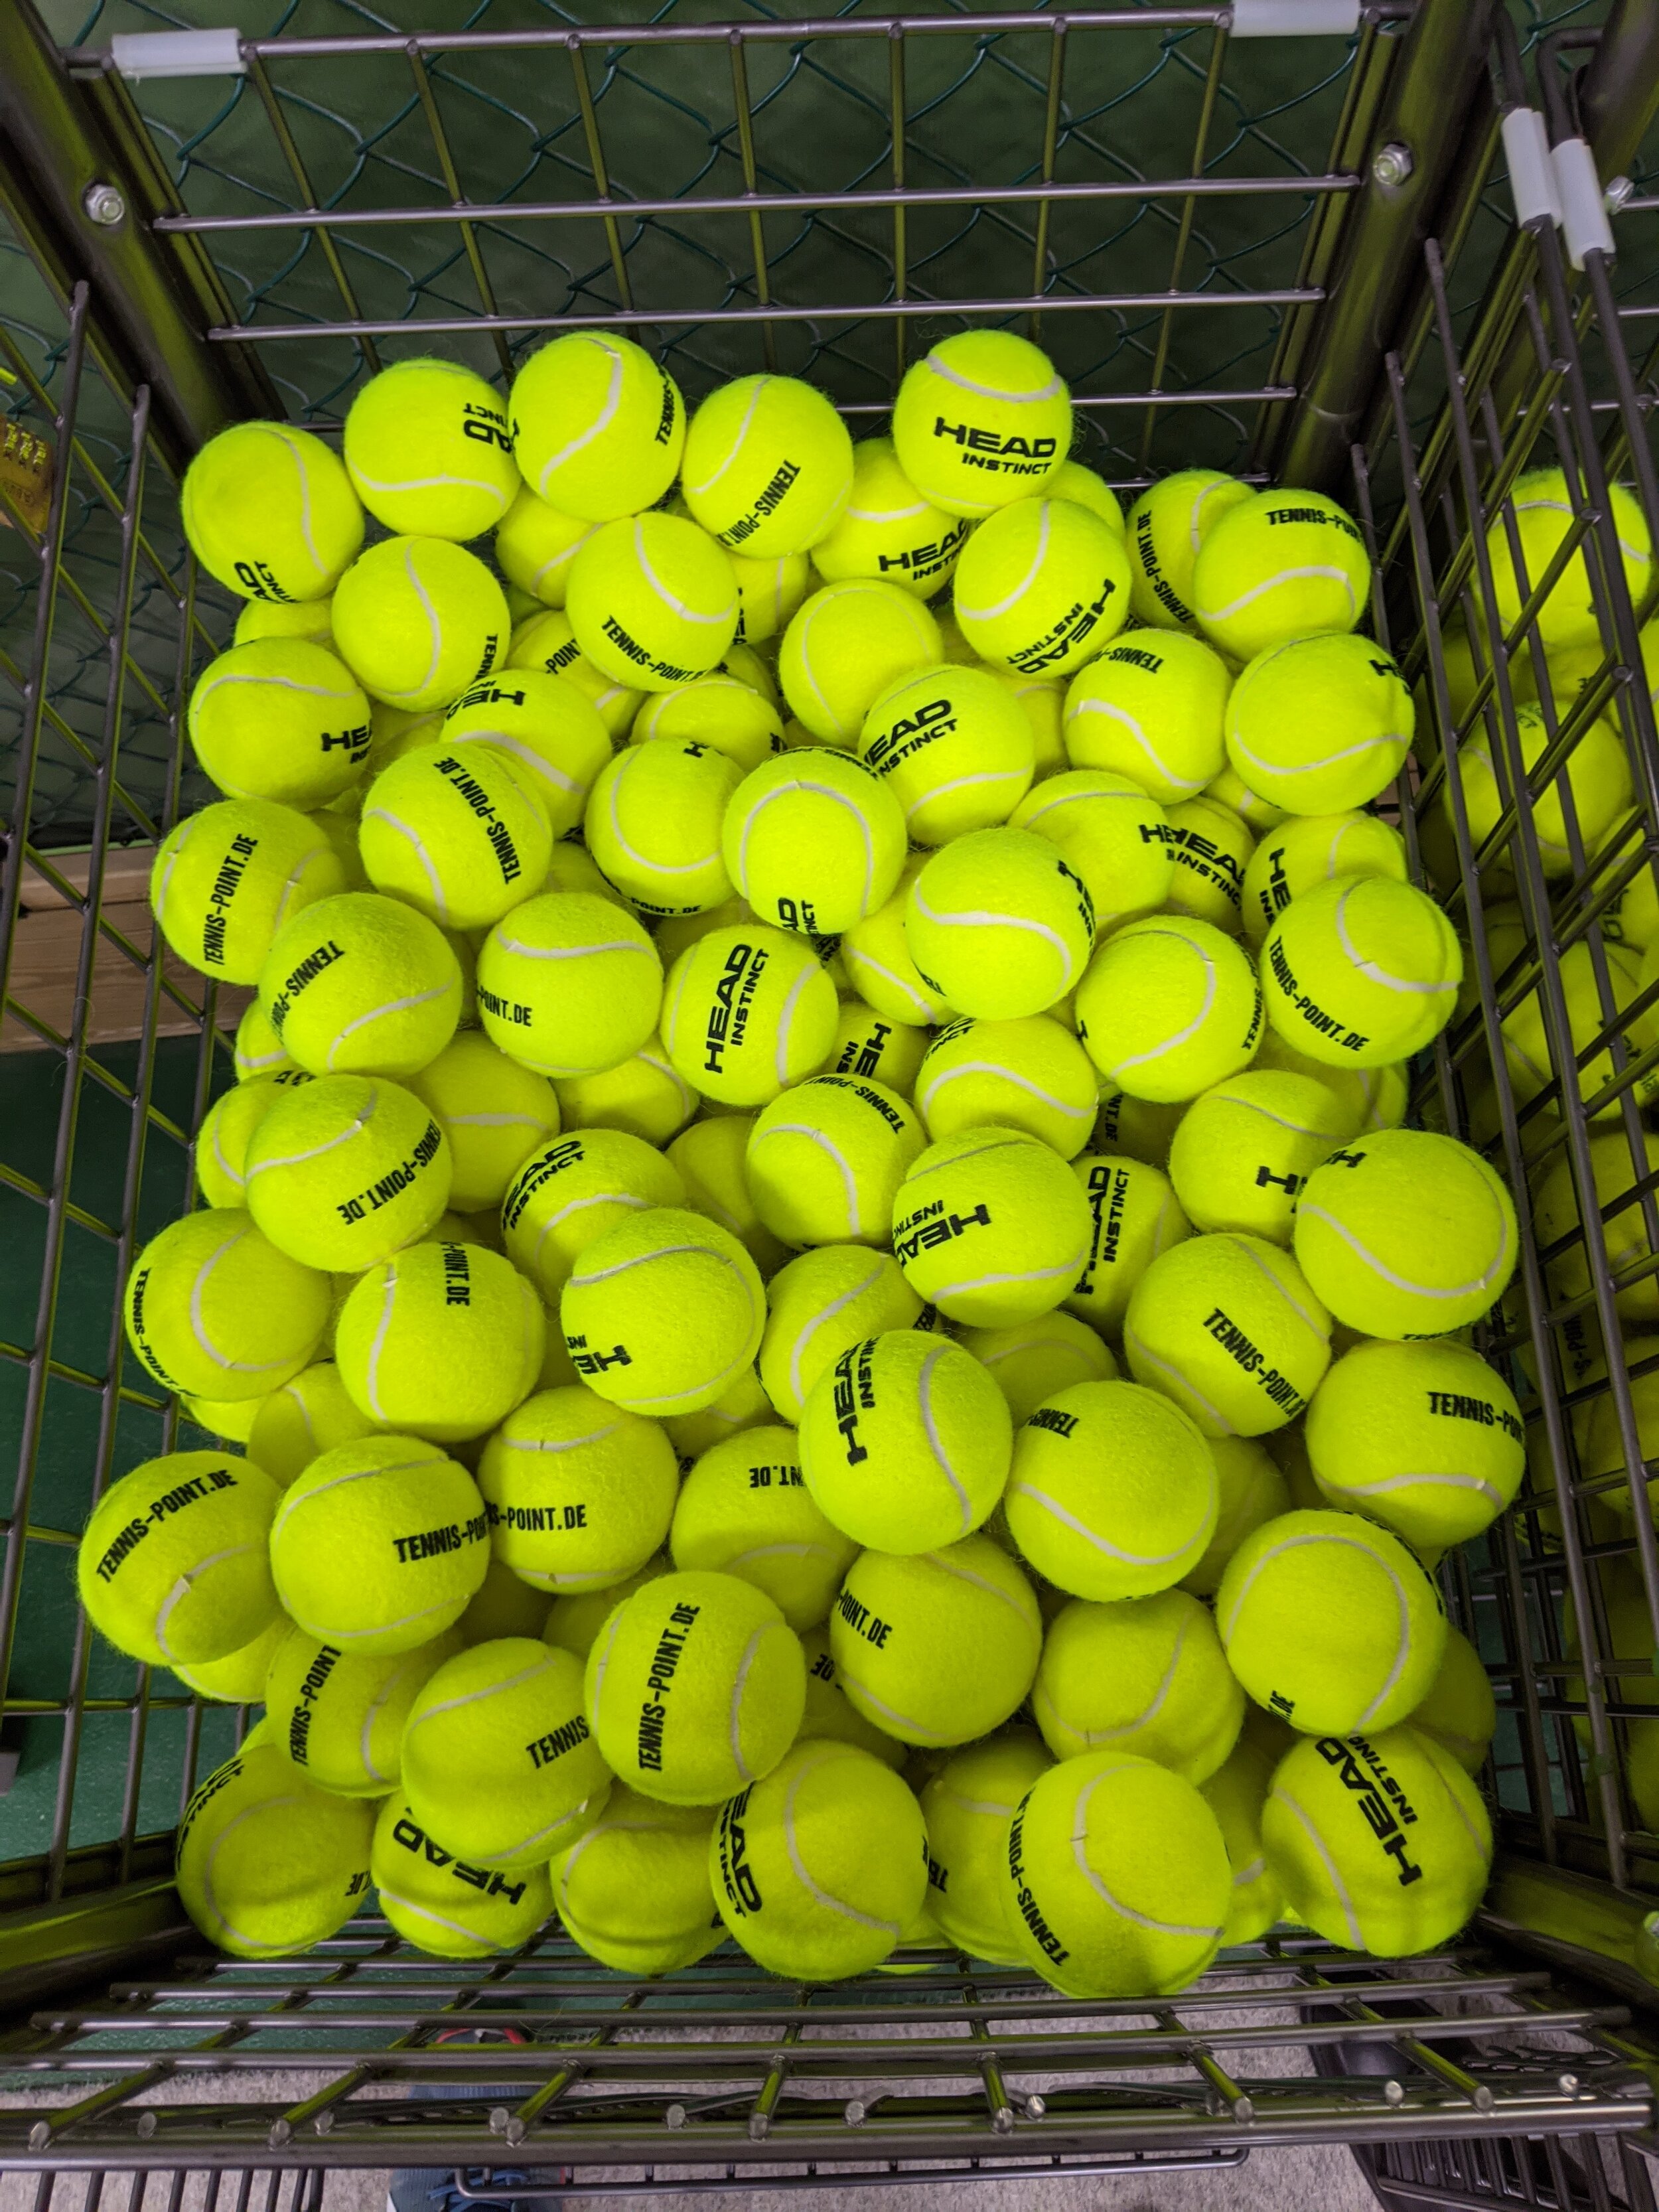 Fräscha nya tennisbollar för STS!